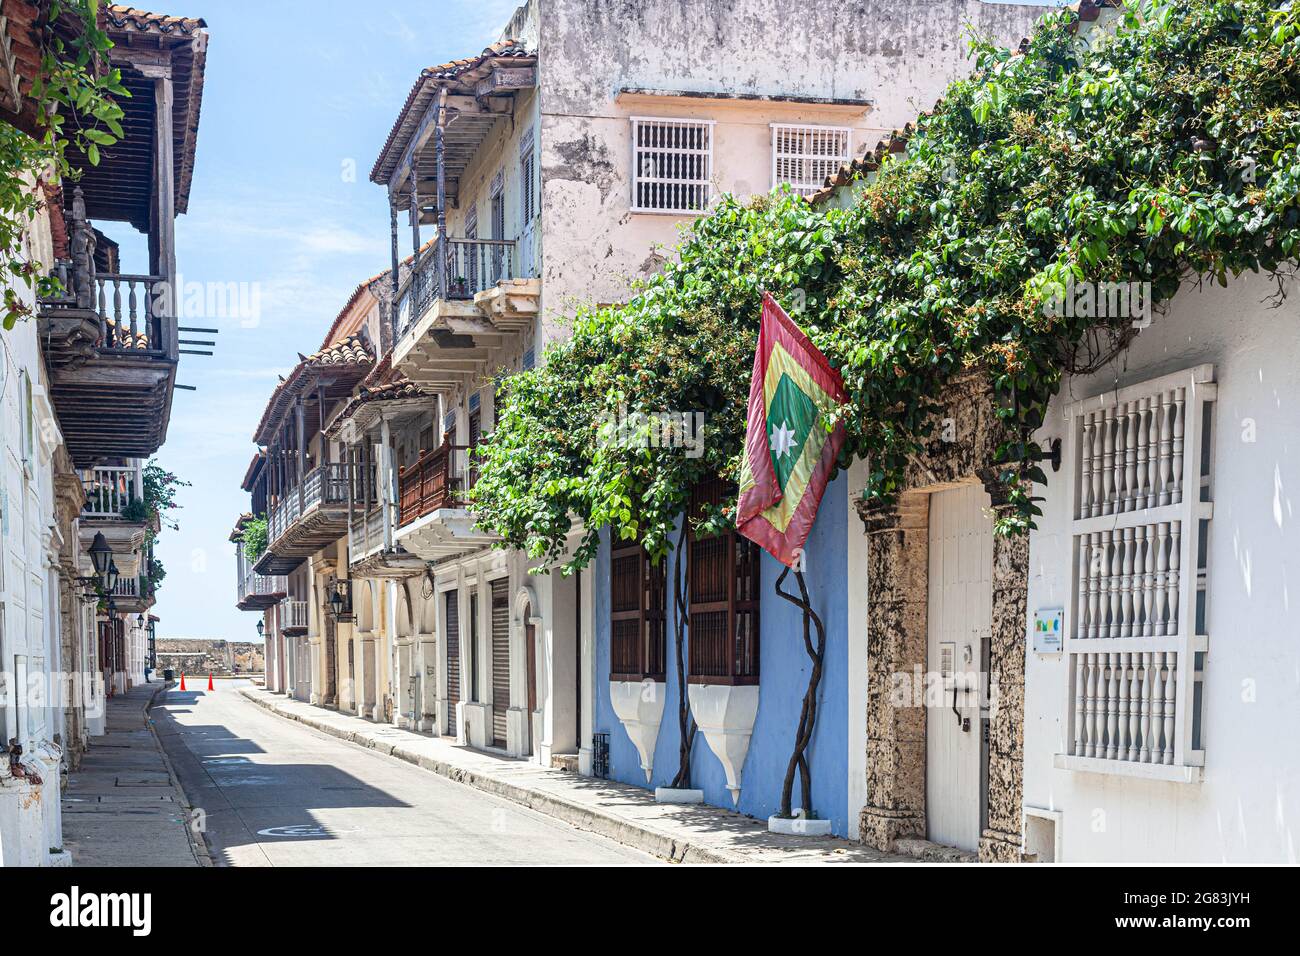 Calle de Don Sancho, Cartagena de Indias, Colombia. Stock Photo